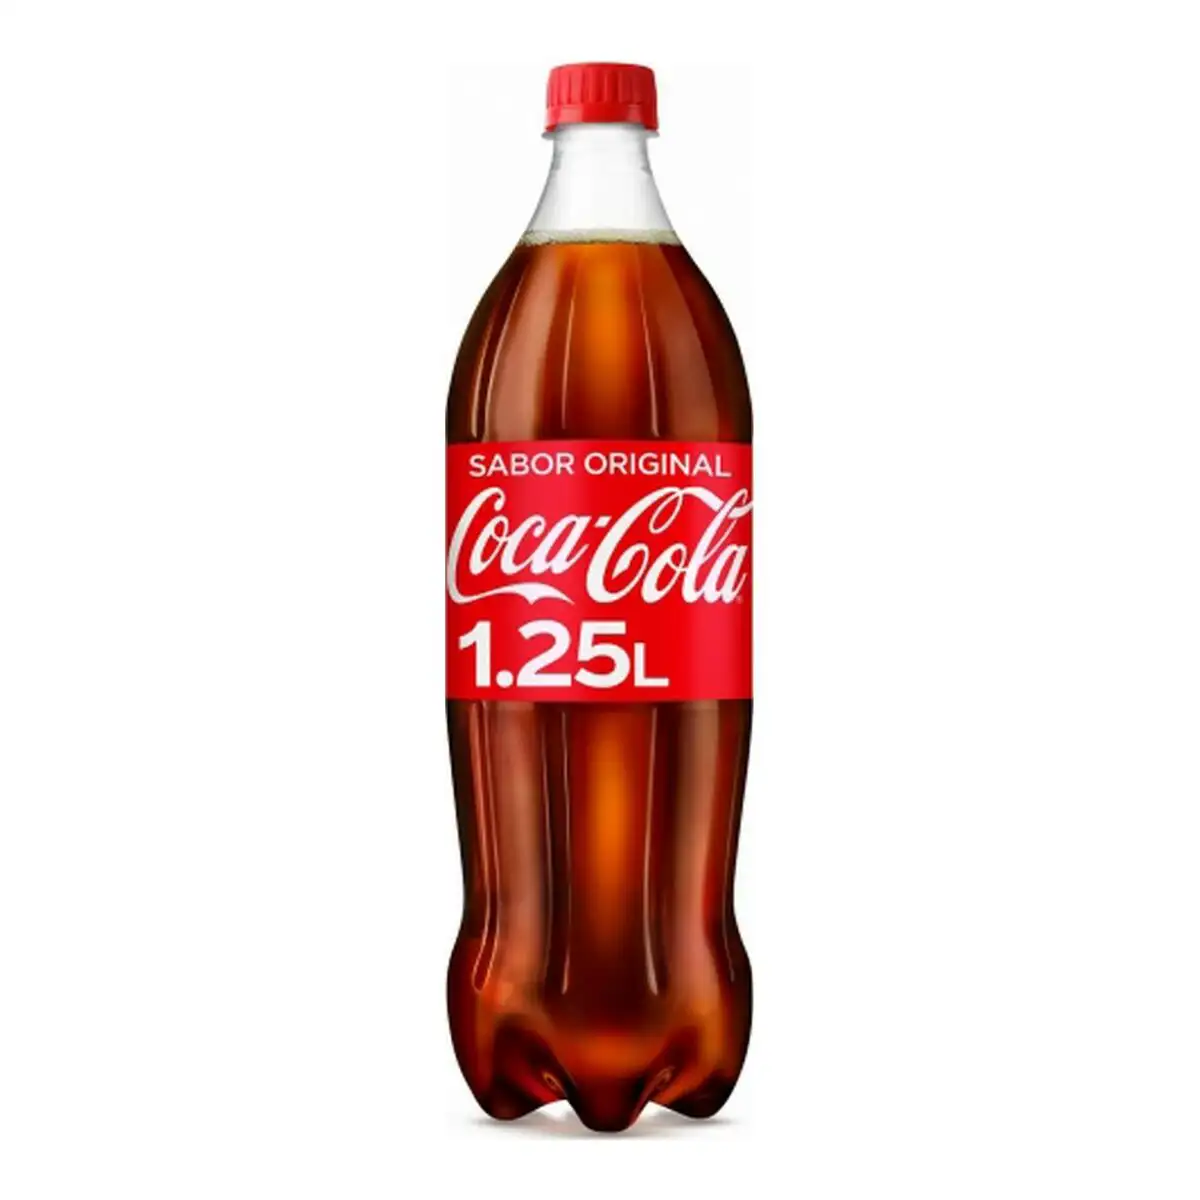 Boisson rafrai chissante coca cola_1236. DIAYTAR SENEGAL - Où Choisir Devient une Découverte. Explorez notre boutique en ligne et trouvez des articles qui vous surprennent et vous ravissent à chaque clic.